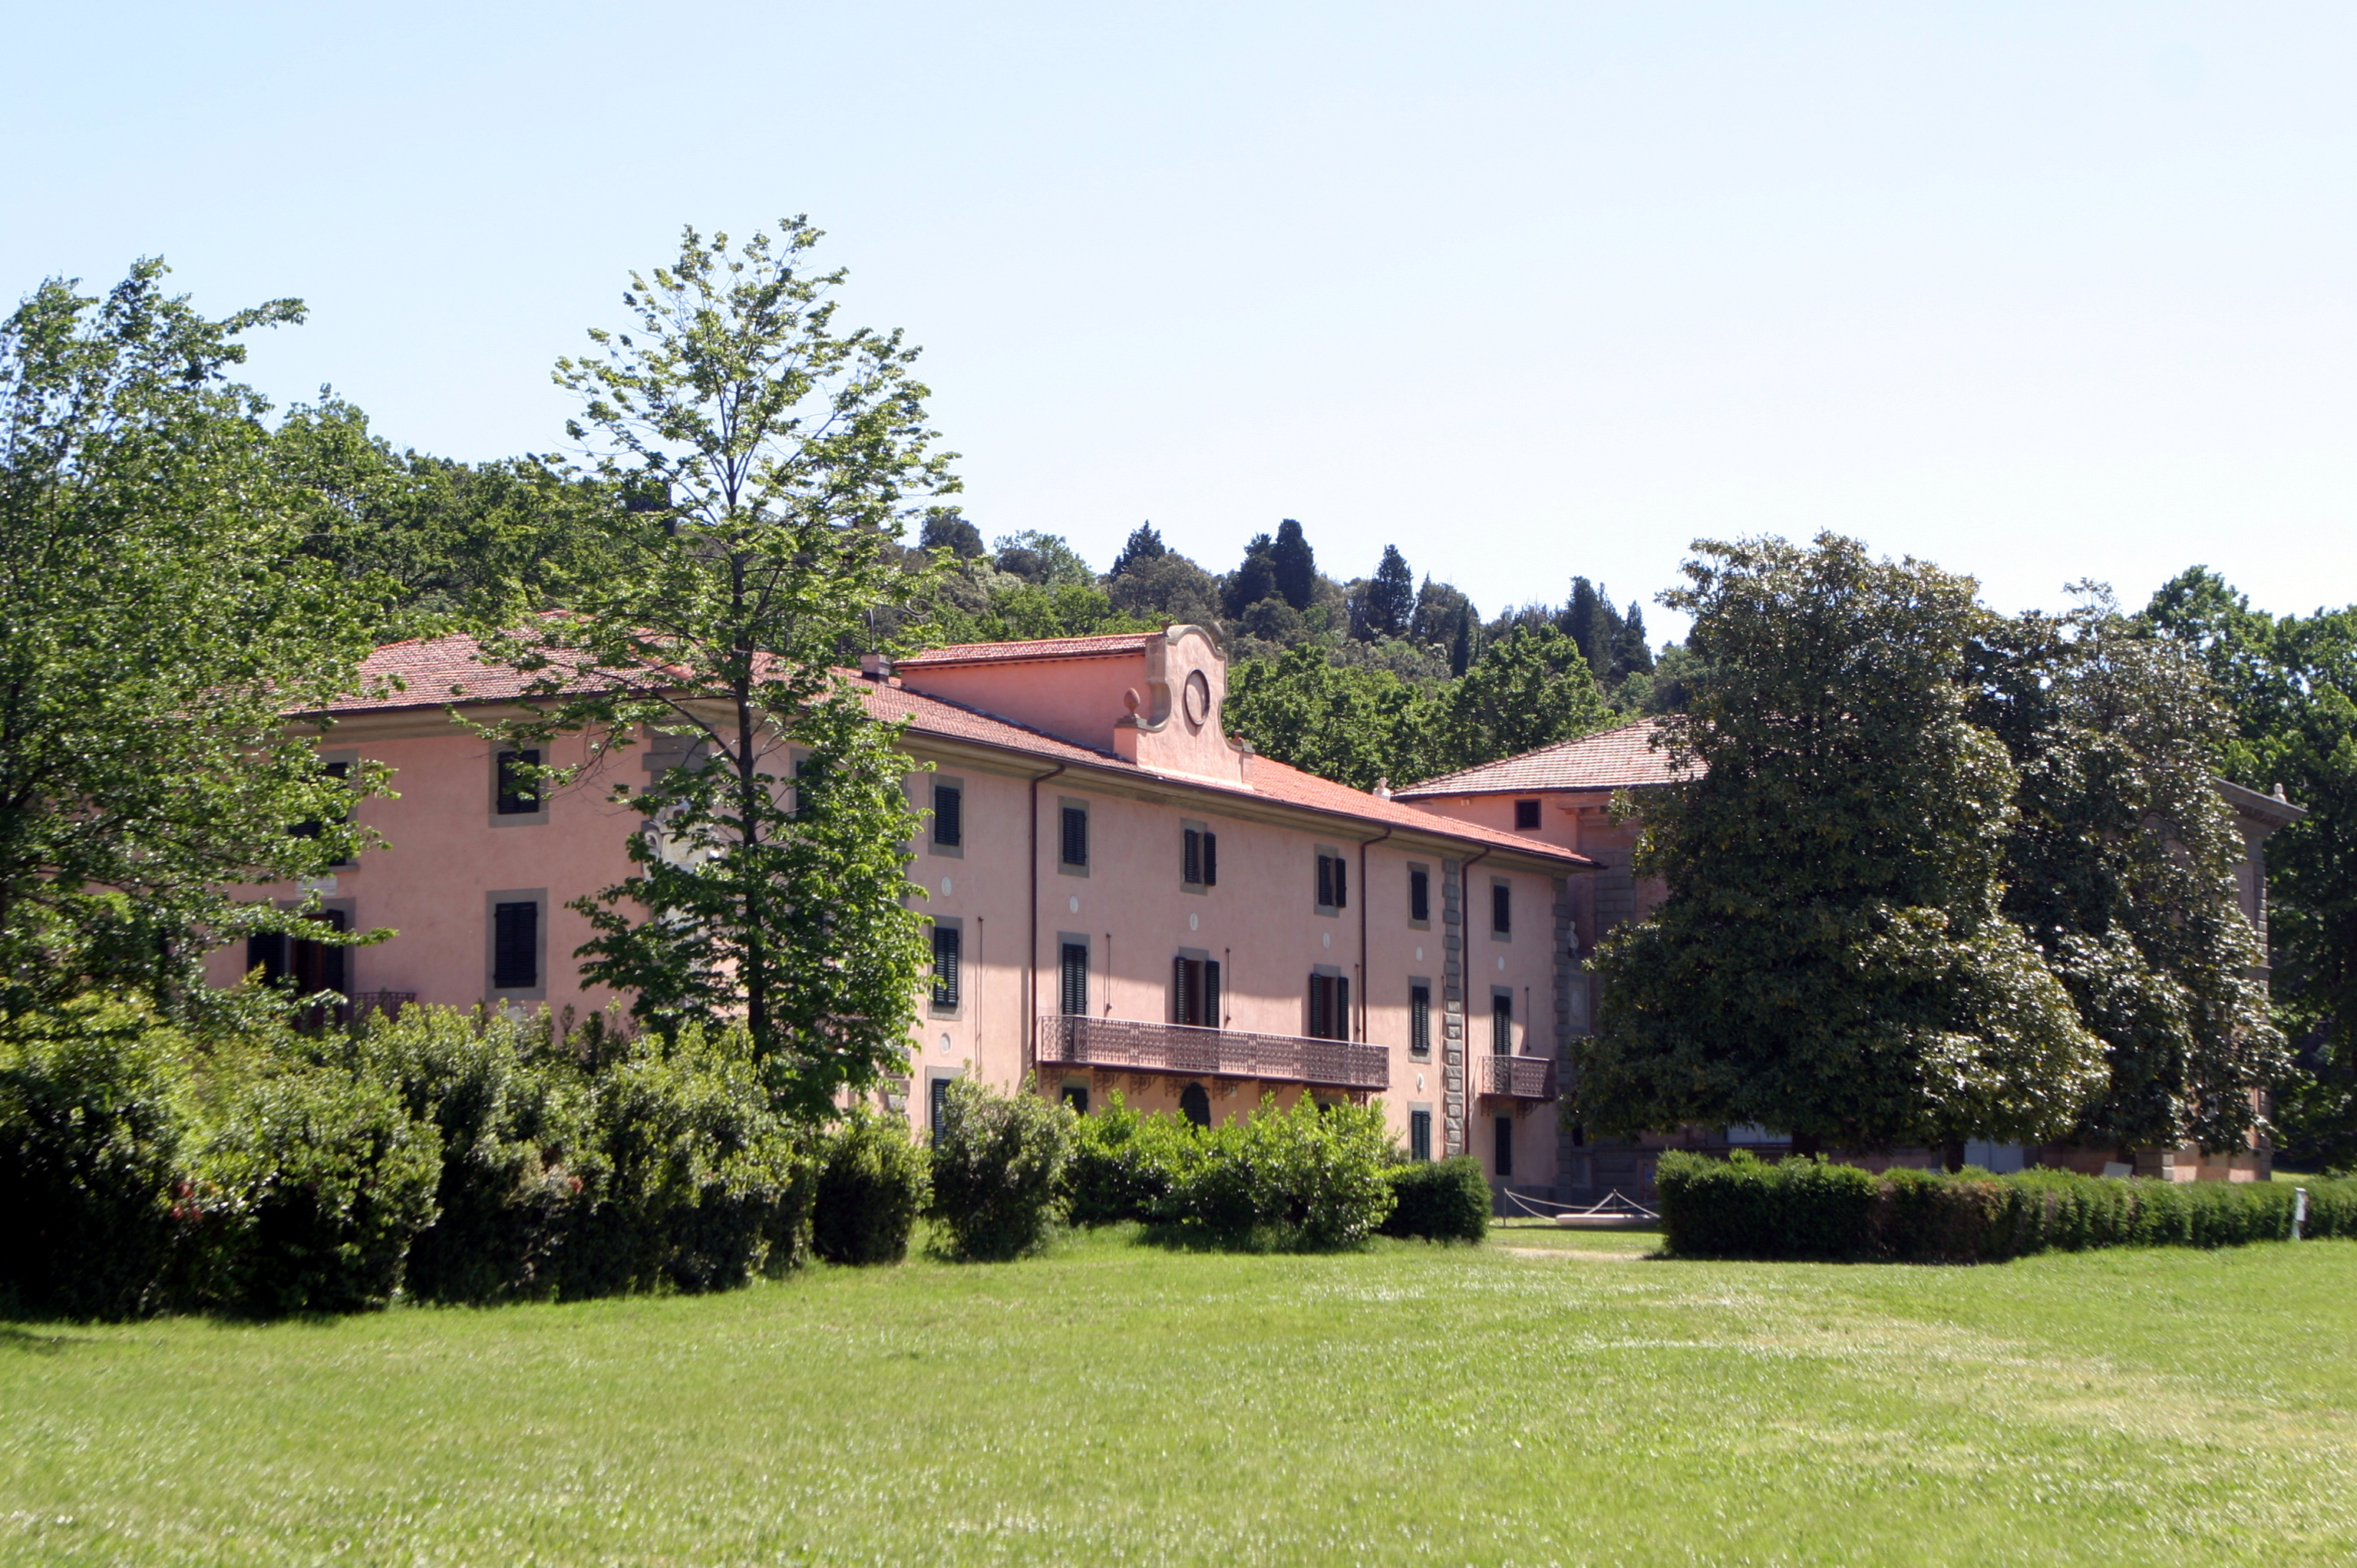 Parco di Pratolino, Villa Demidoff (gi Paggeria medicea)